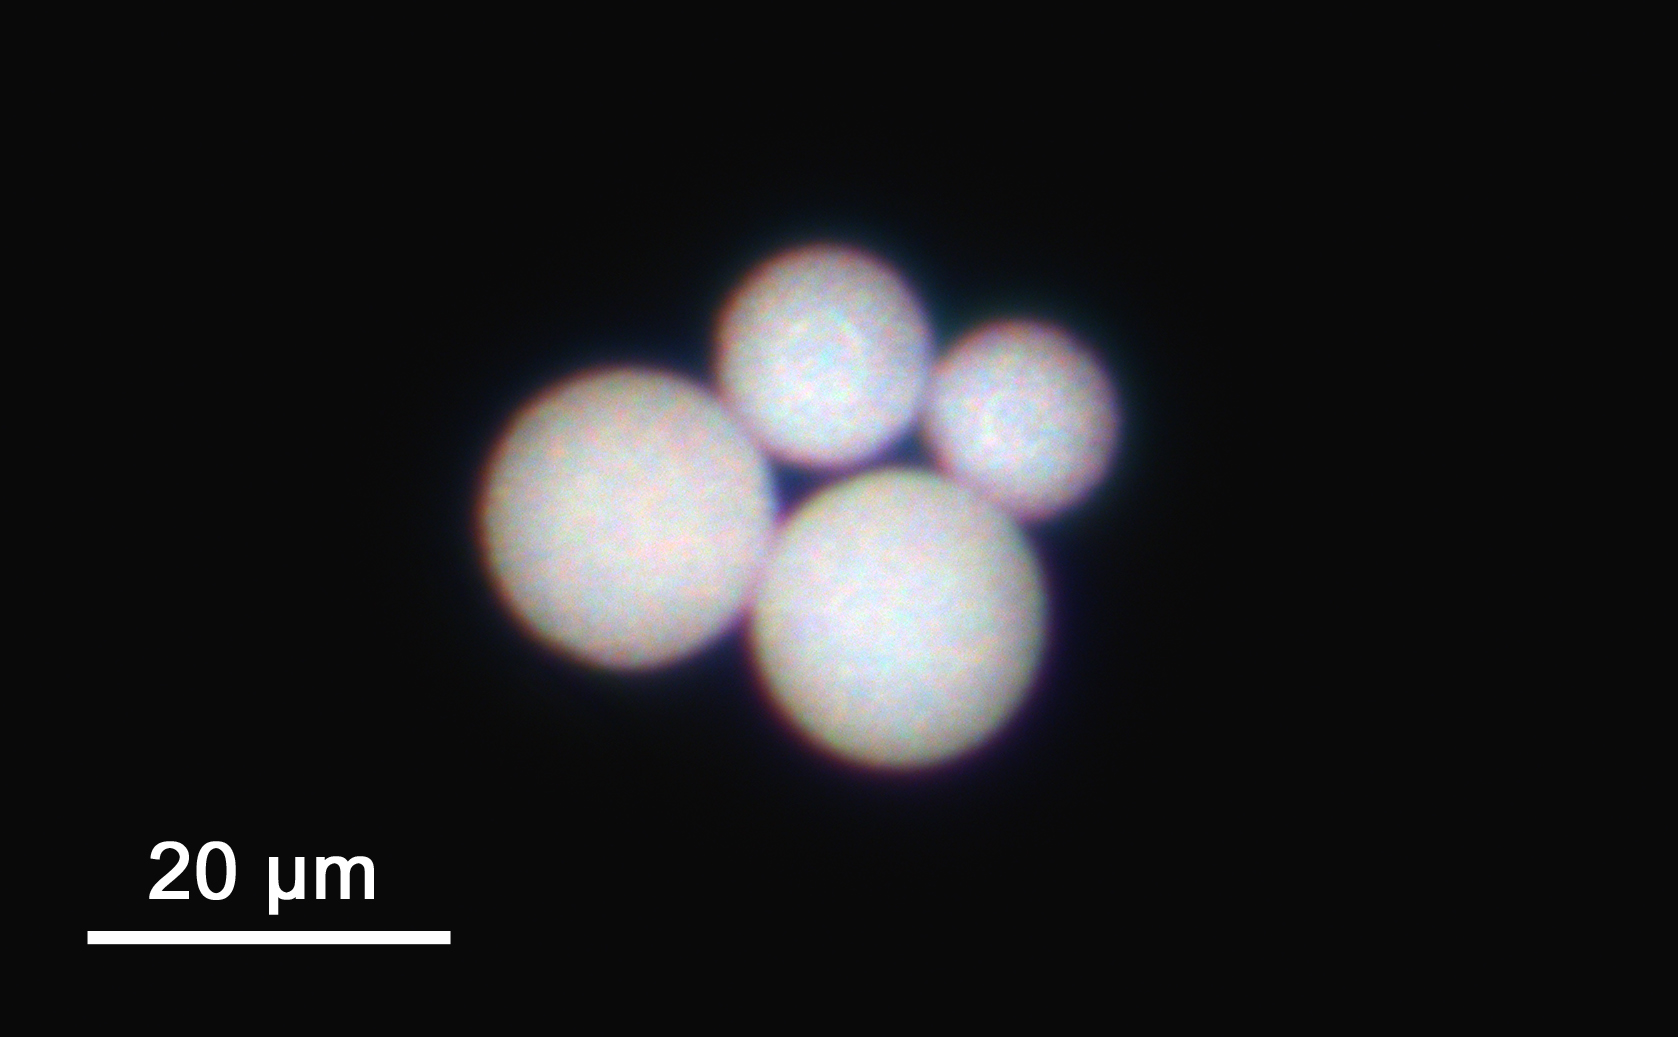 Aufnahme von vier Mikrokugeln mit einem Durchmesser von ca. 10–20 Mikrometern aus Lithiumniobat-Nanokristallen unter dem Darkfield-Mikroskop.